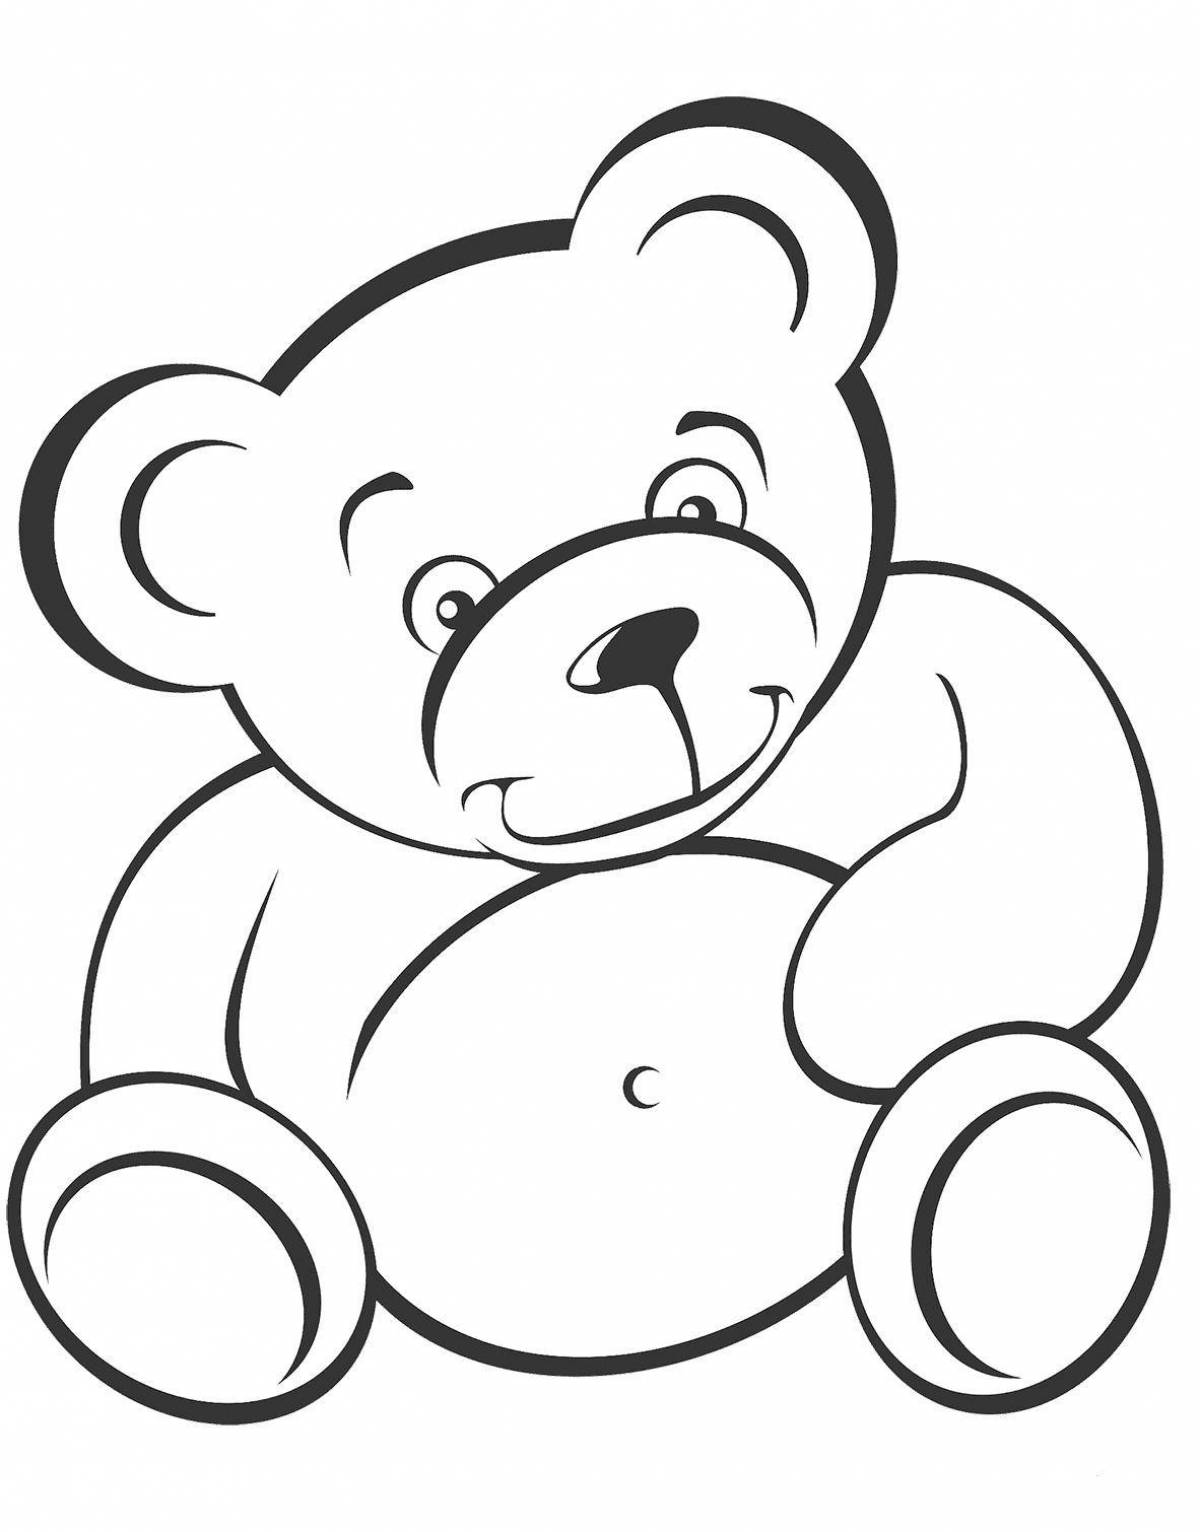 Увлекательная раскраска медведя для детей 4-5 лет